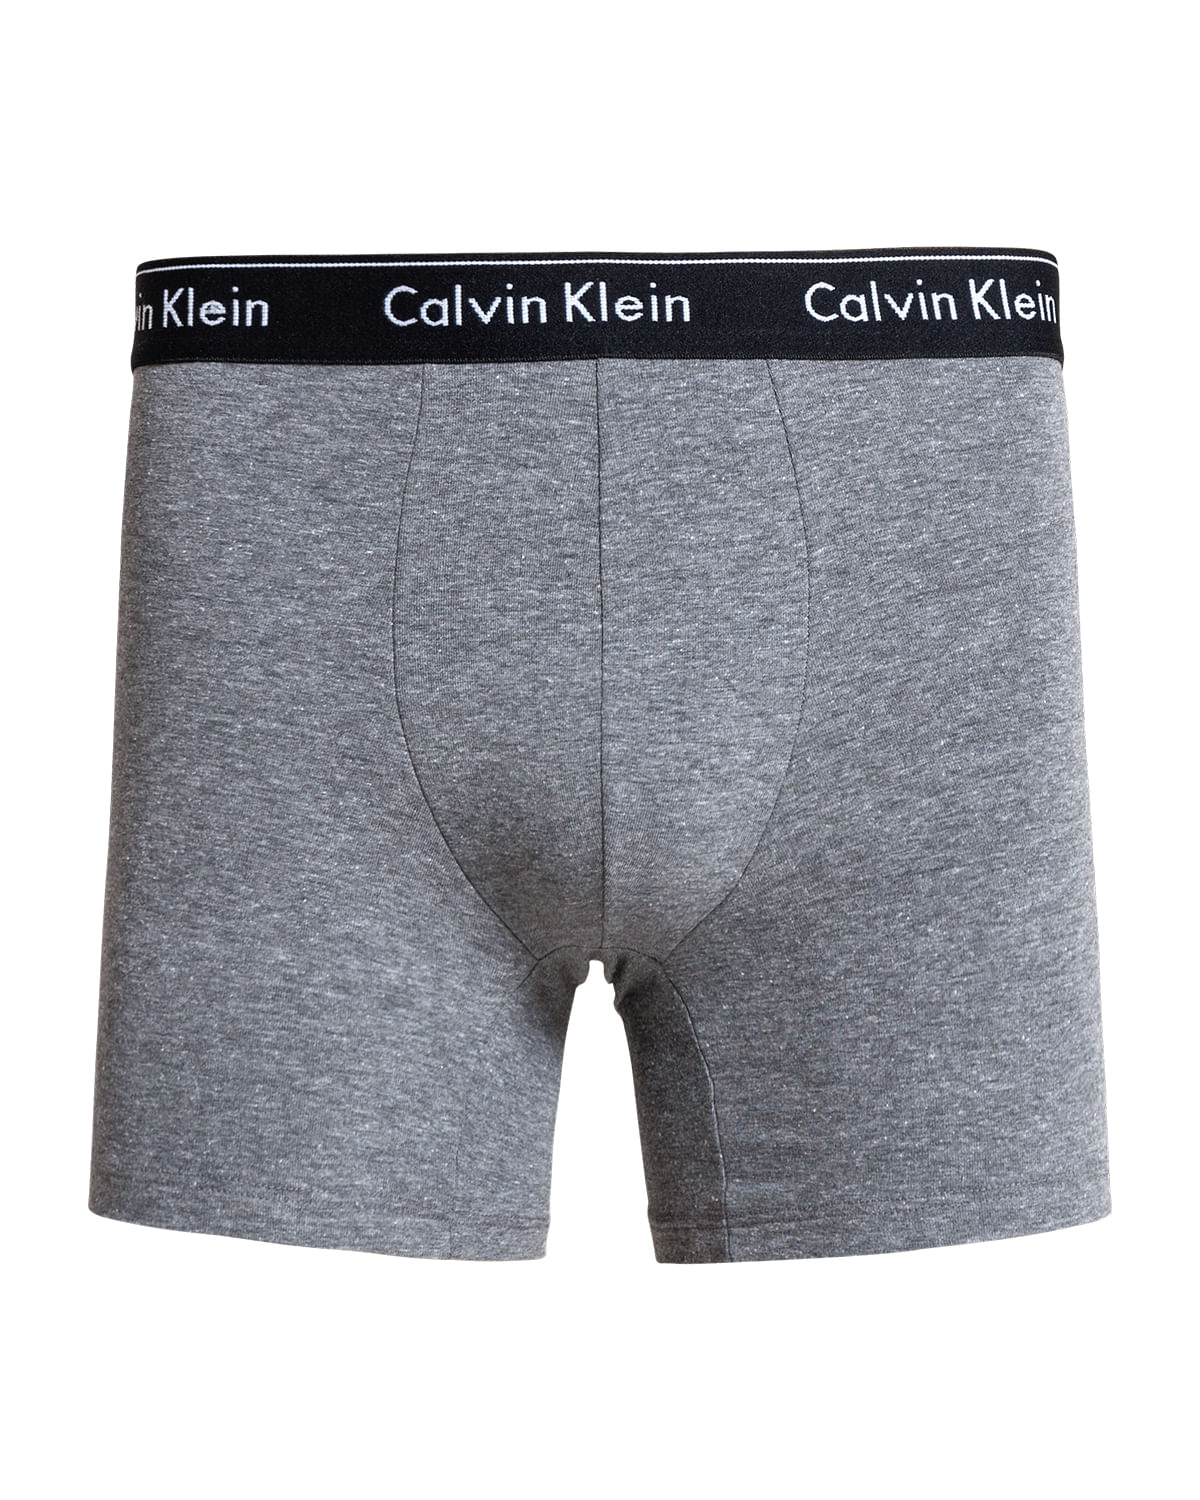 Cueca Calvin Klein Boxer Modern Cotton Elástico